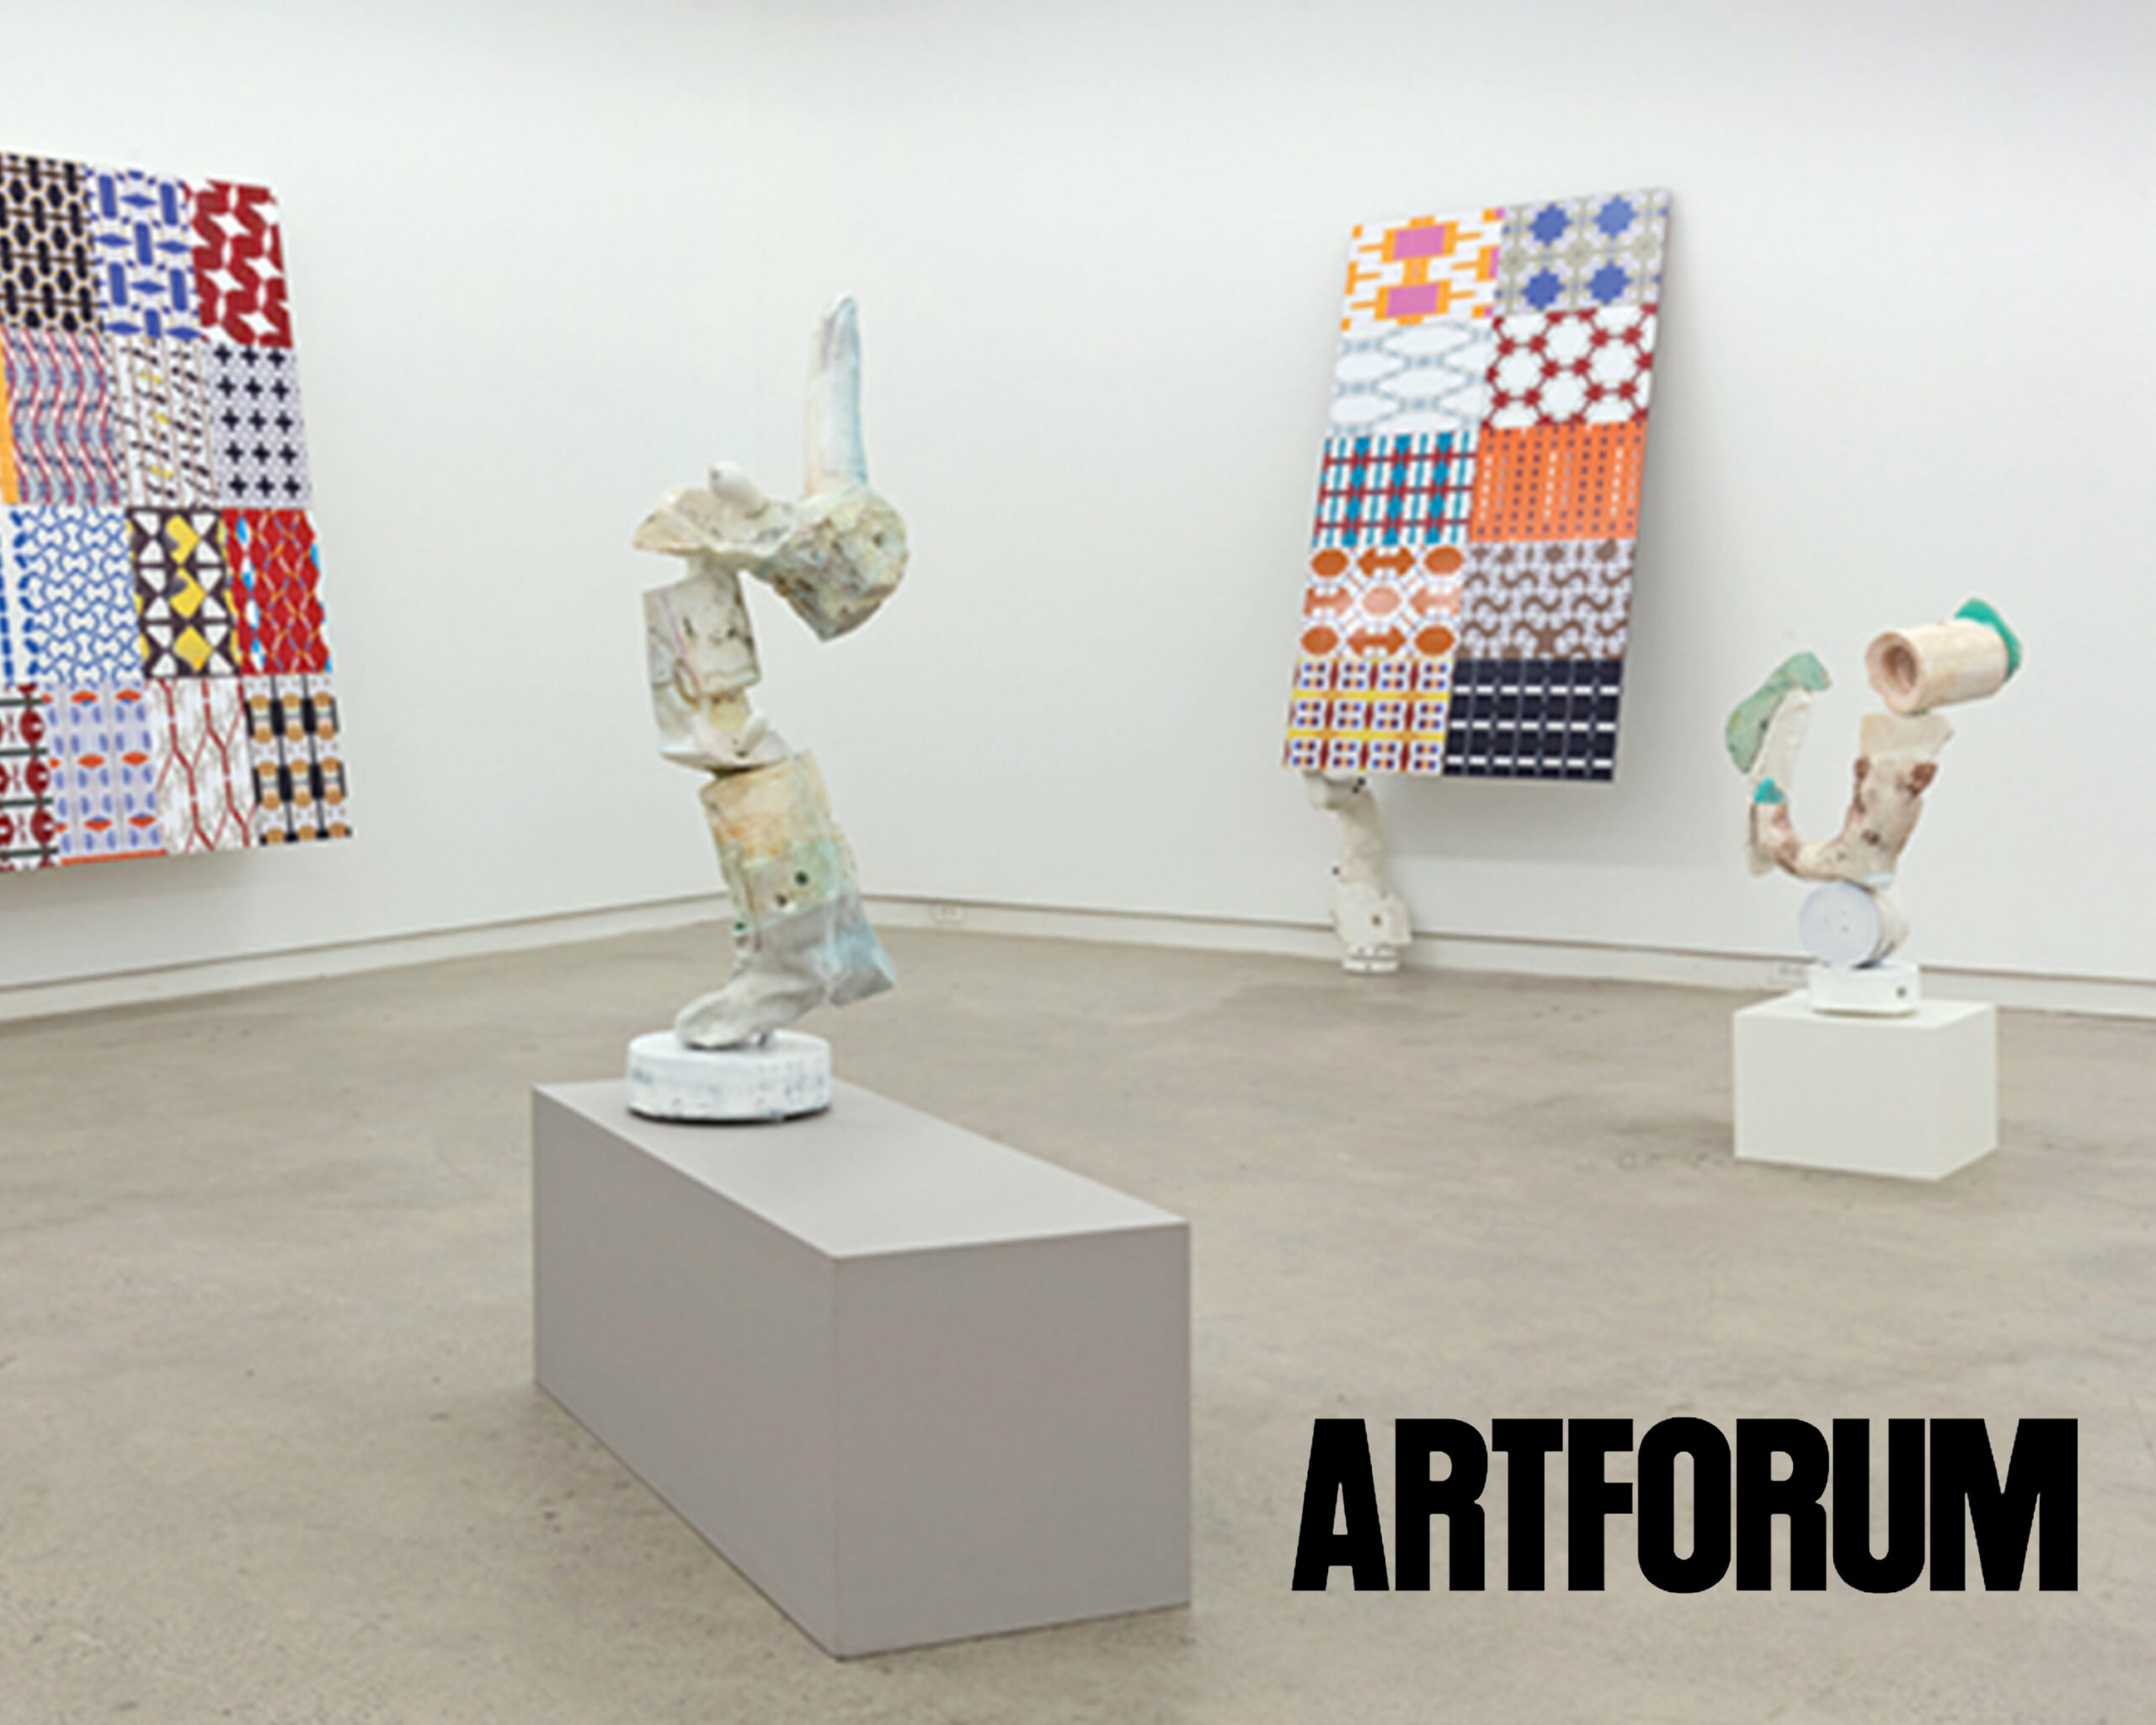 Artforum, 2017 | David Armstrong Six and Kristan Horton at Clint Roenisch